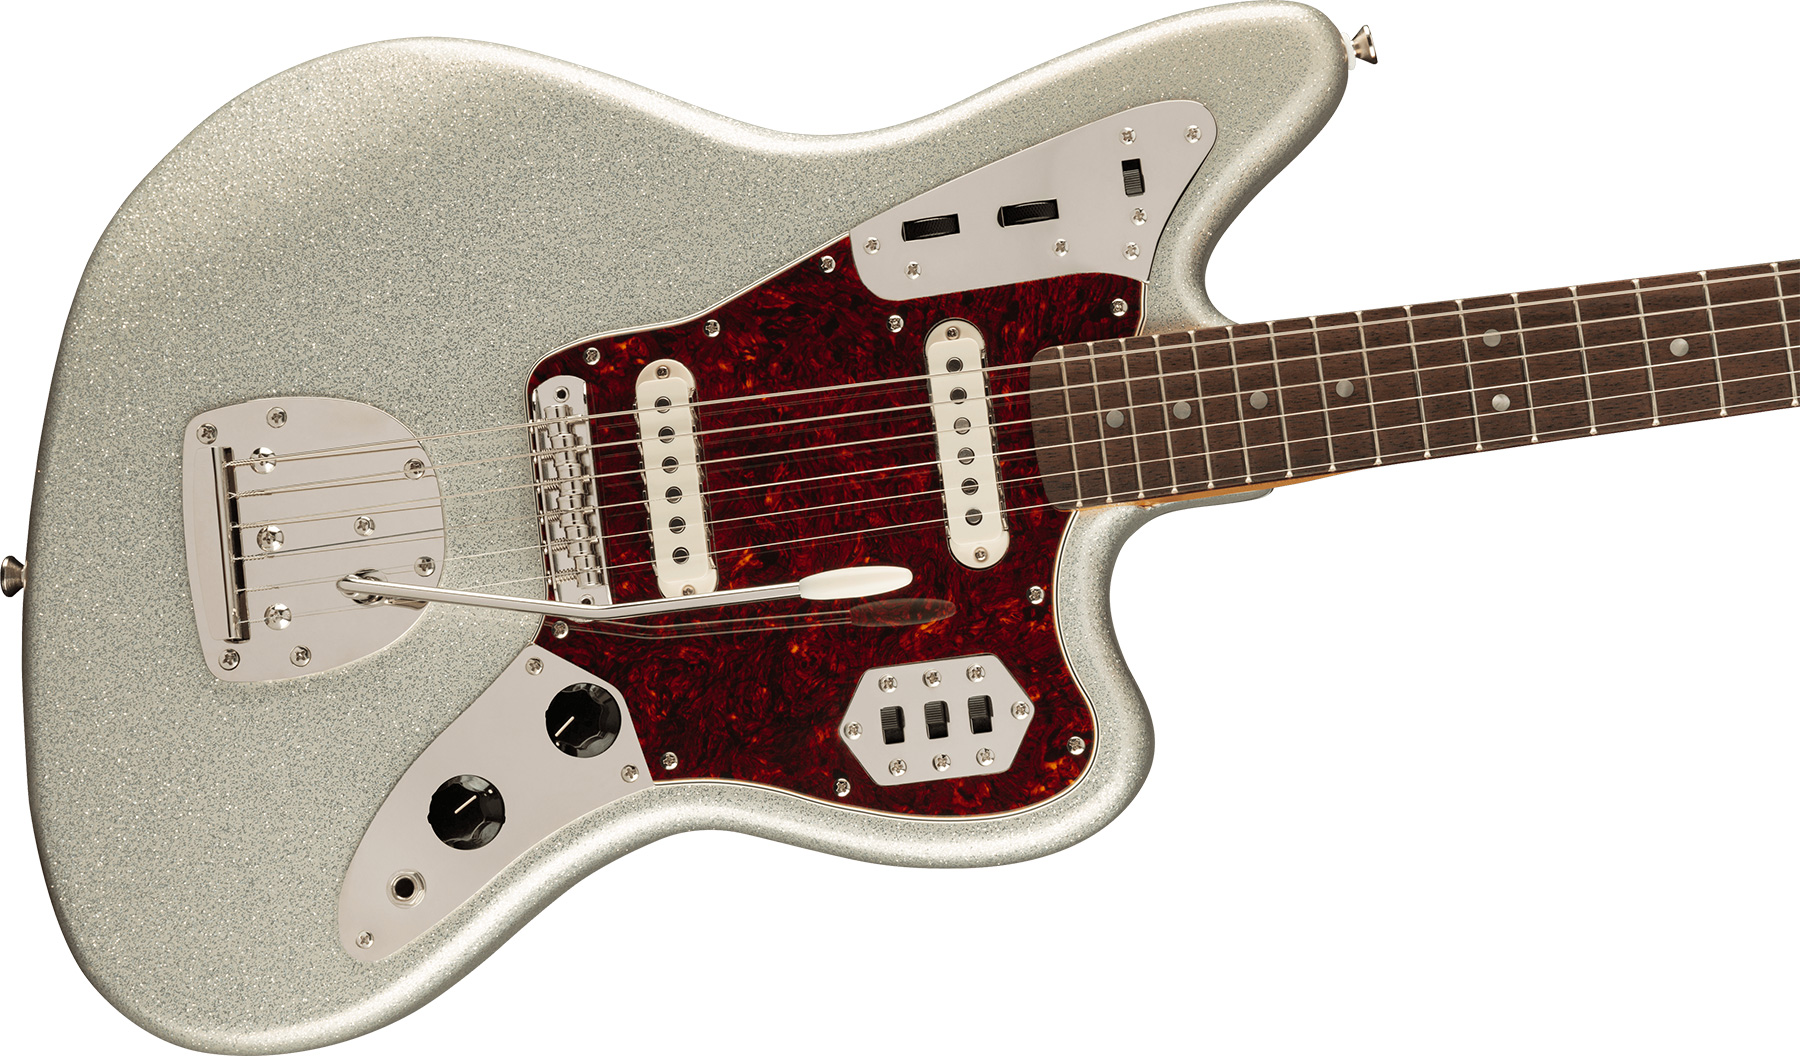 Squier Jaguar 60s Classic Vibe Fsr Ltd 2s Trem Lau - Silver Sparkle Matching Headstock - Retro rock electric guitar - Variation 2